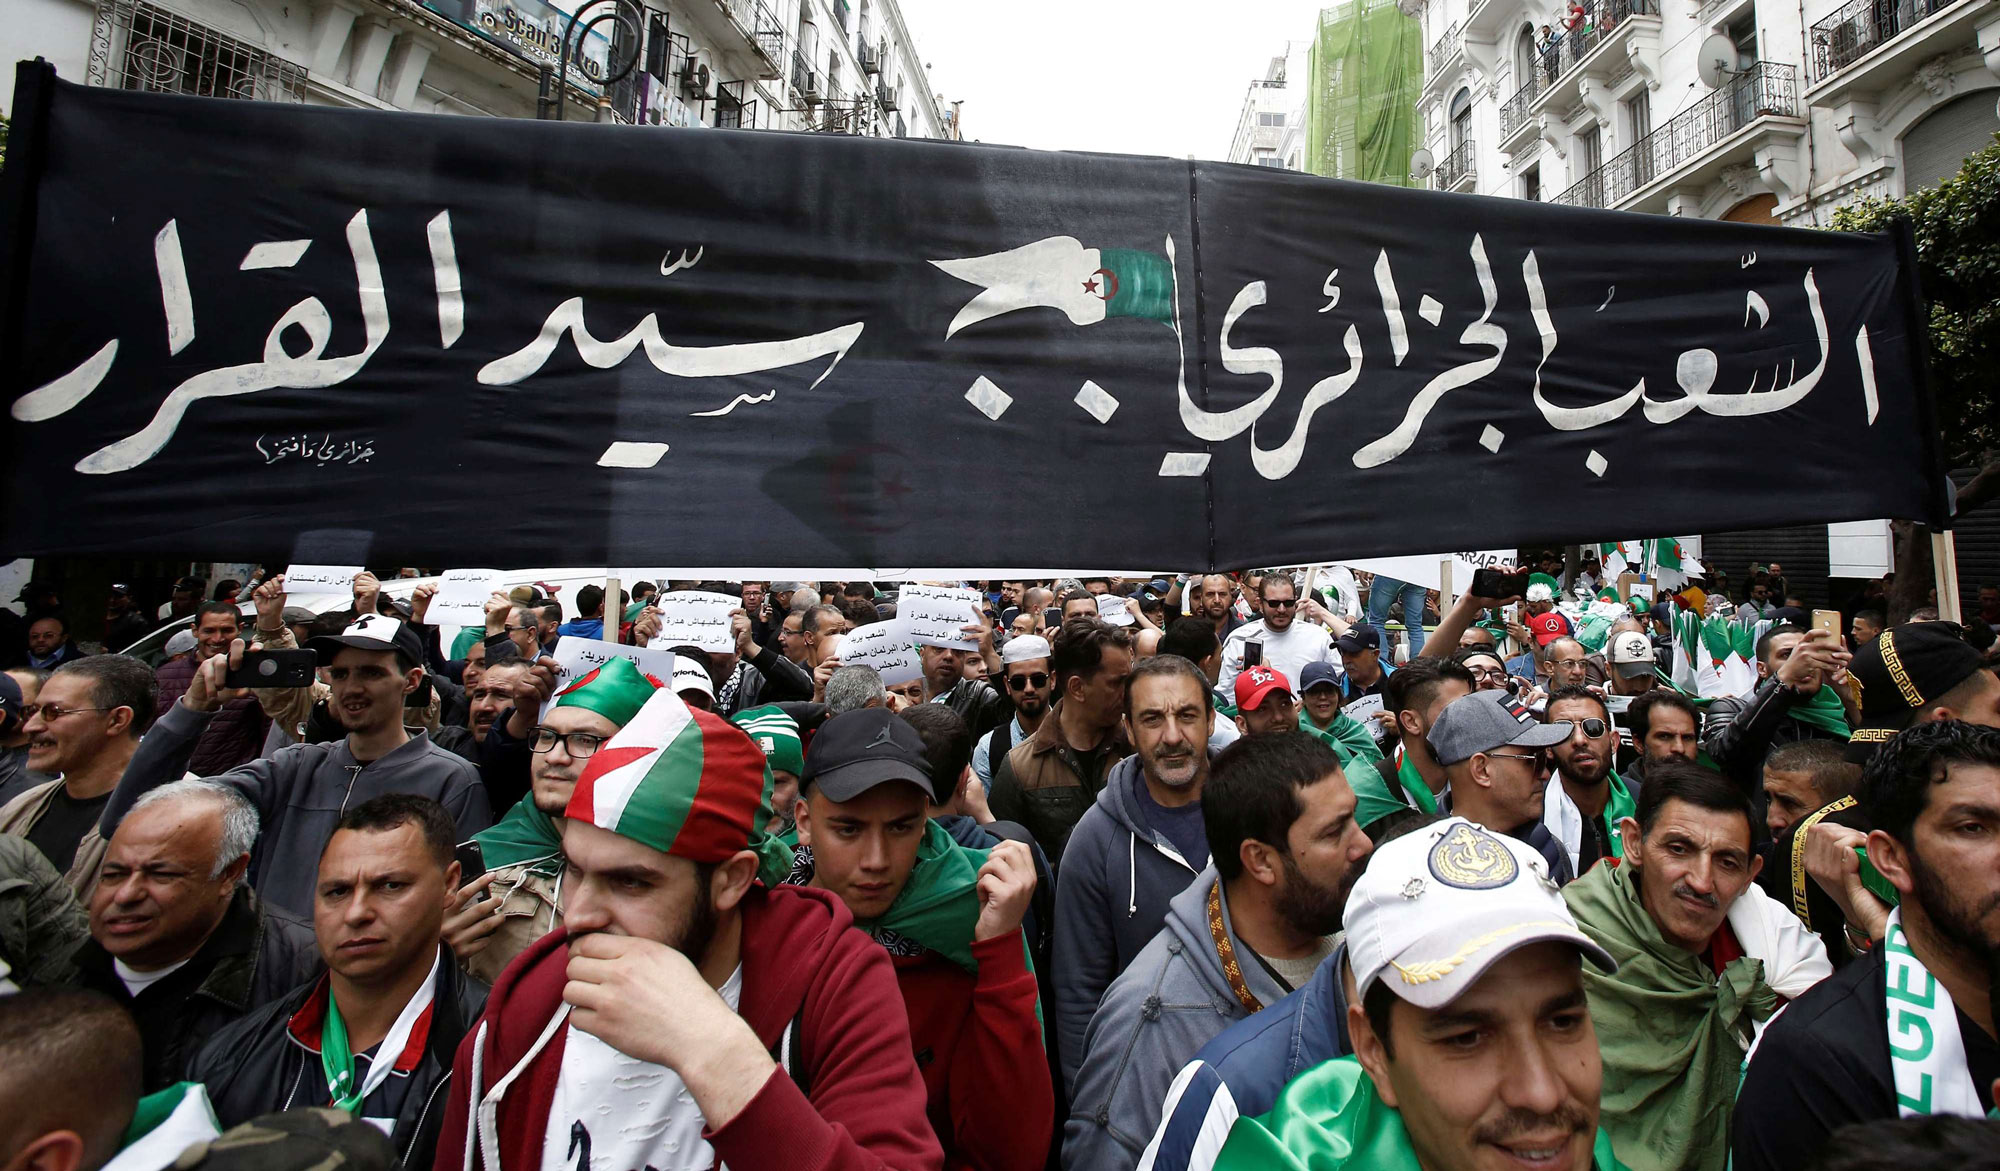 الجزائريون يواصلون حراكهم دعما لمرحلة انتقالية لا تشمل رموز النظام